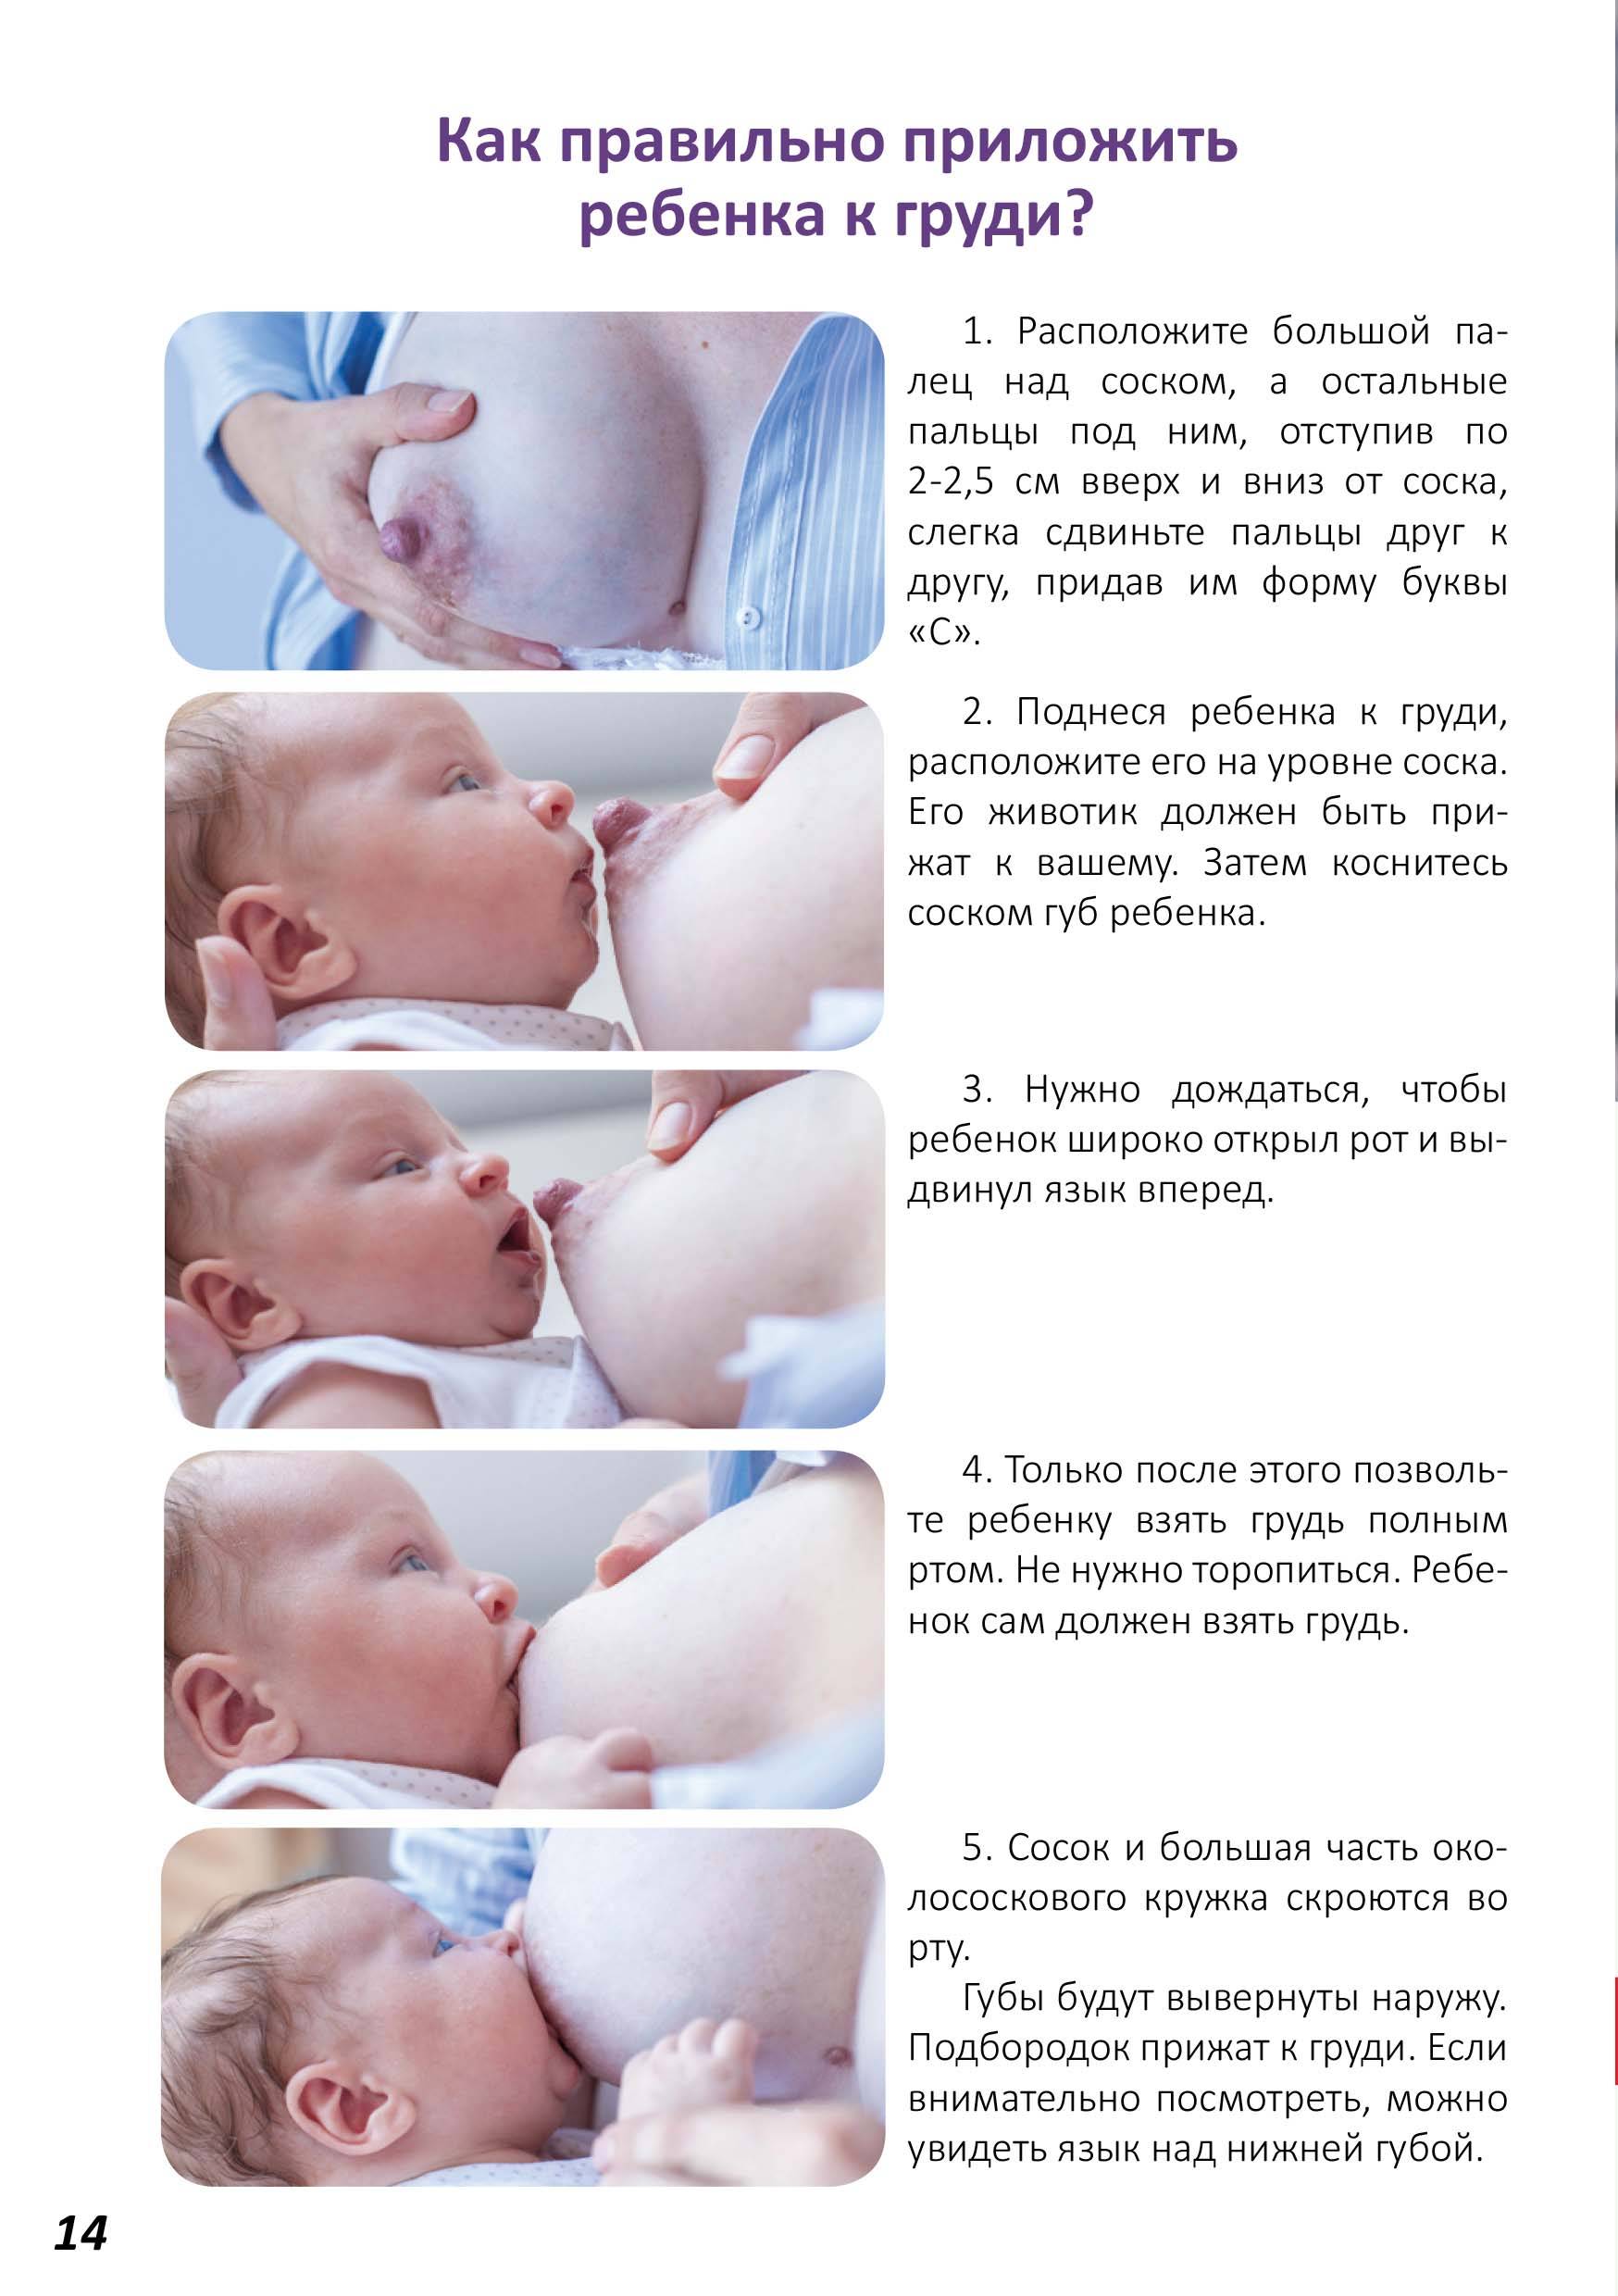 Жвачка при гв: можно ли жевать резинку при грудном вскармливании новорожденного, зачем это делать, какую выбрать, чем заменить, а также состав продукта, польза и вред